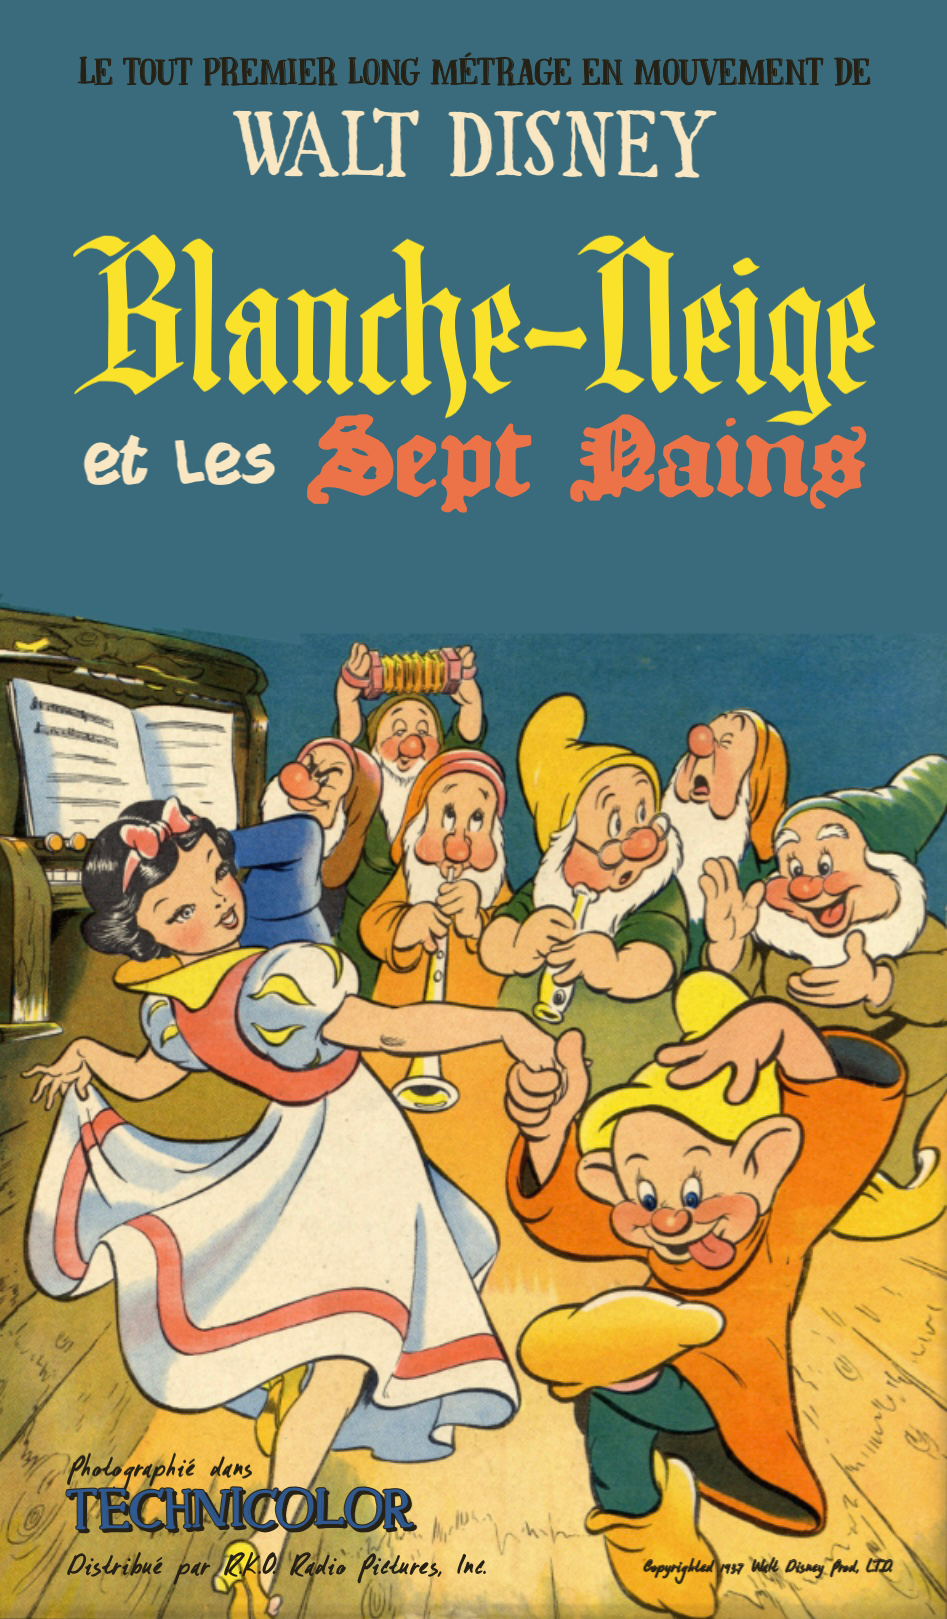 Blanche-Neige et les Sept Nains (David Hand, 1937) - La